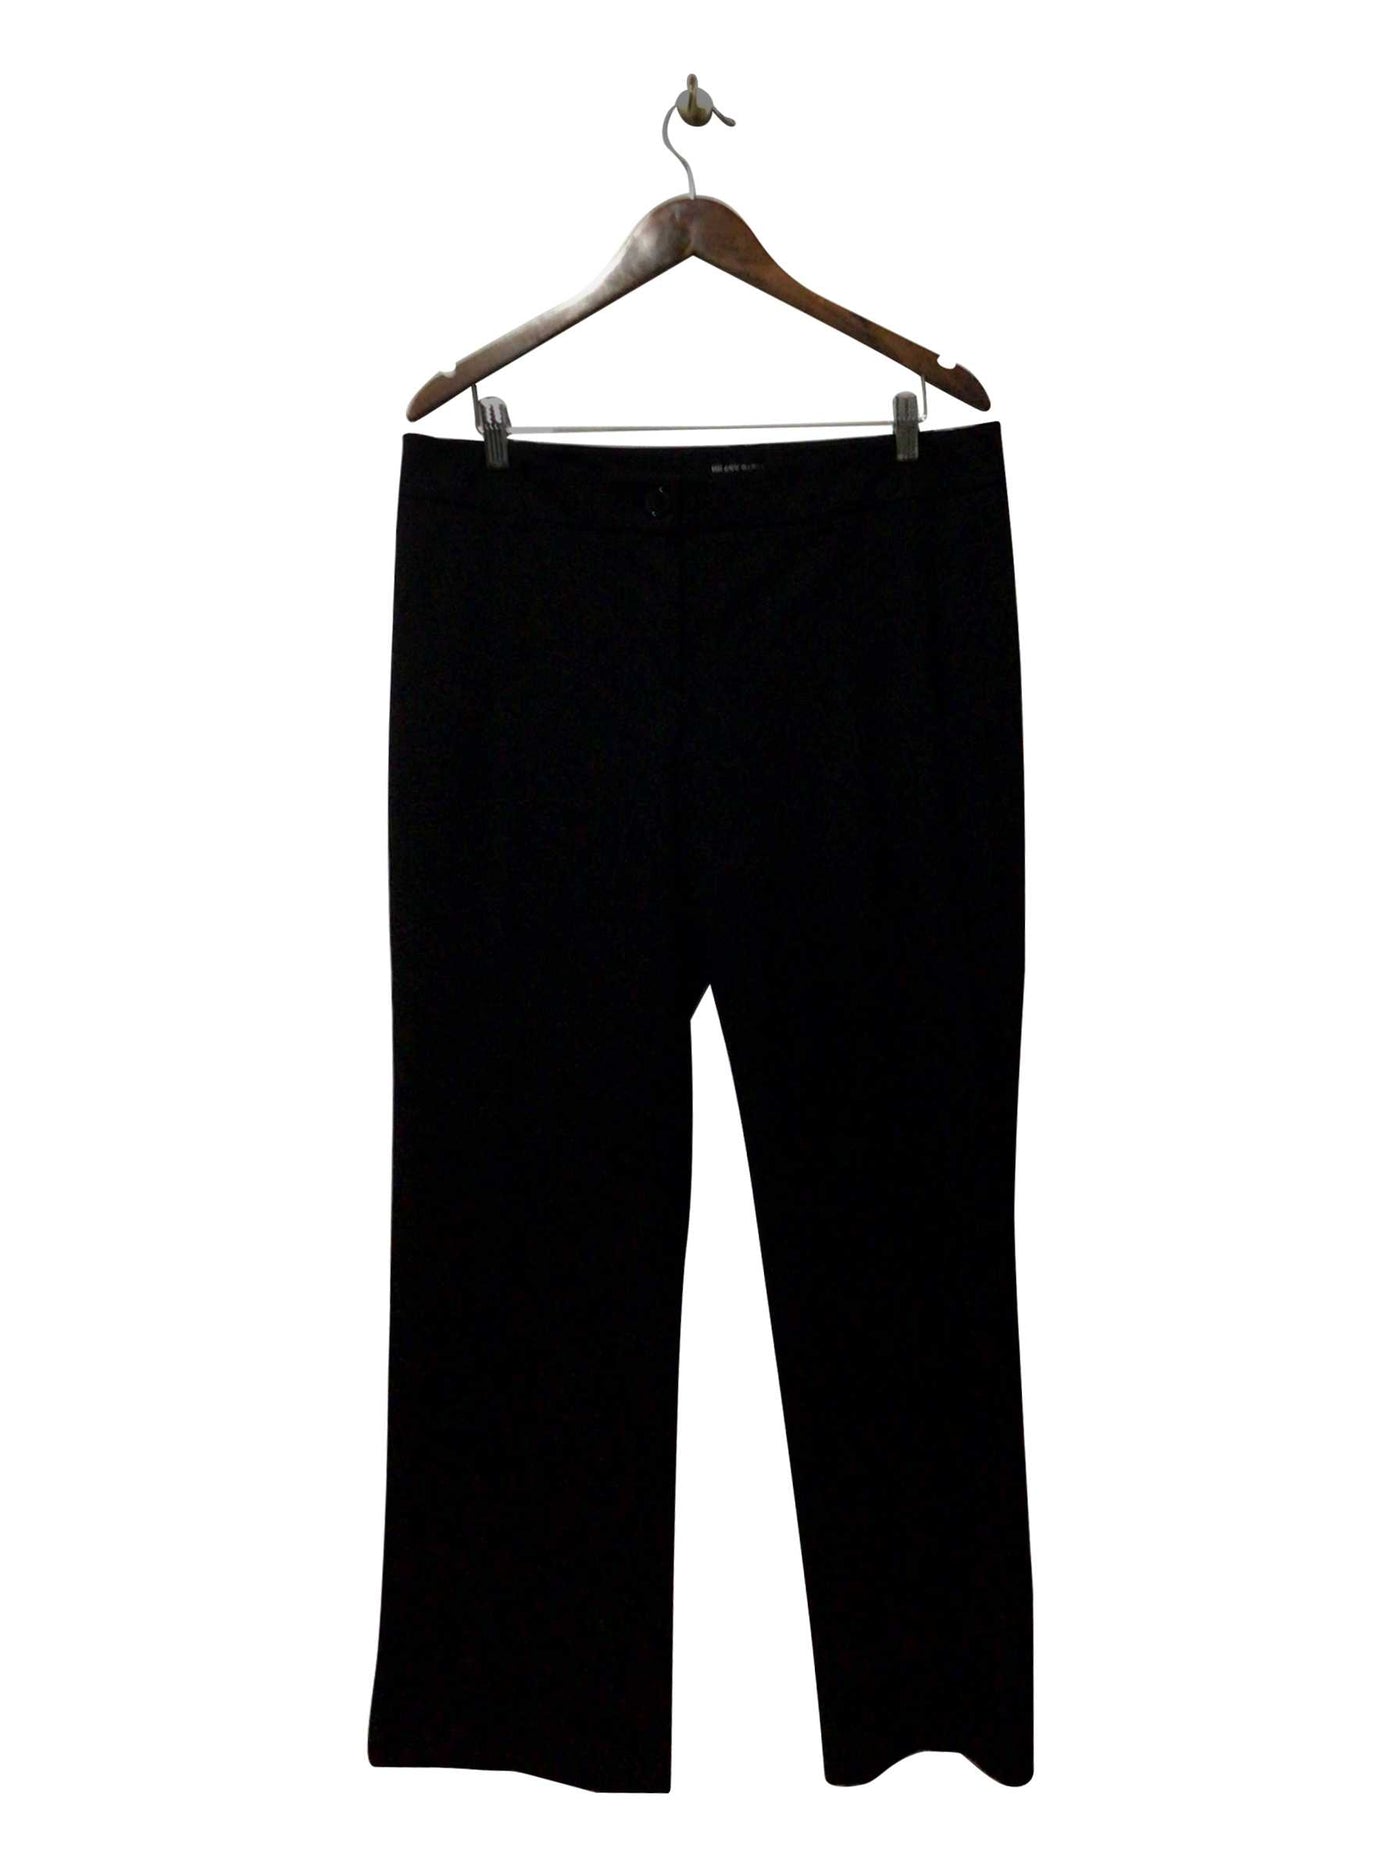 HILARY RADLEY Regular fit Pant in Black  -  12X30  9.59 Koop